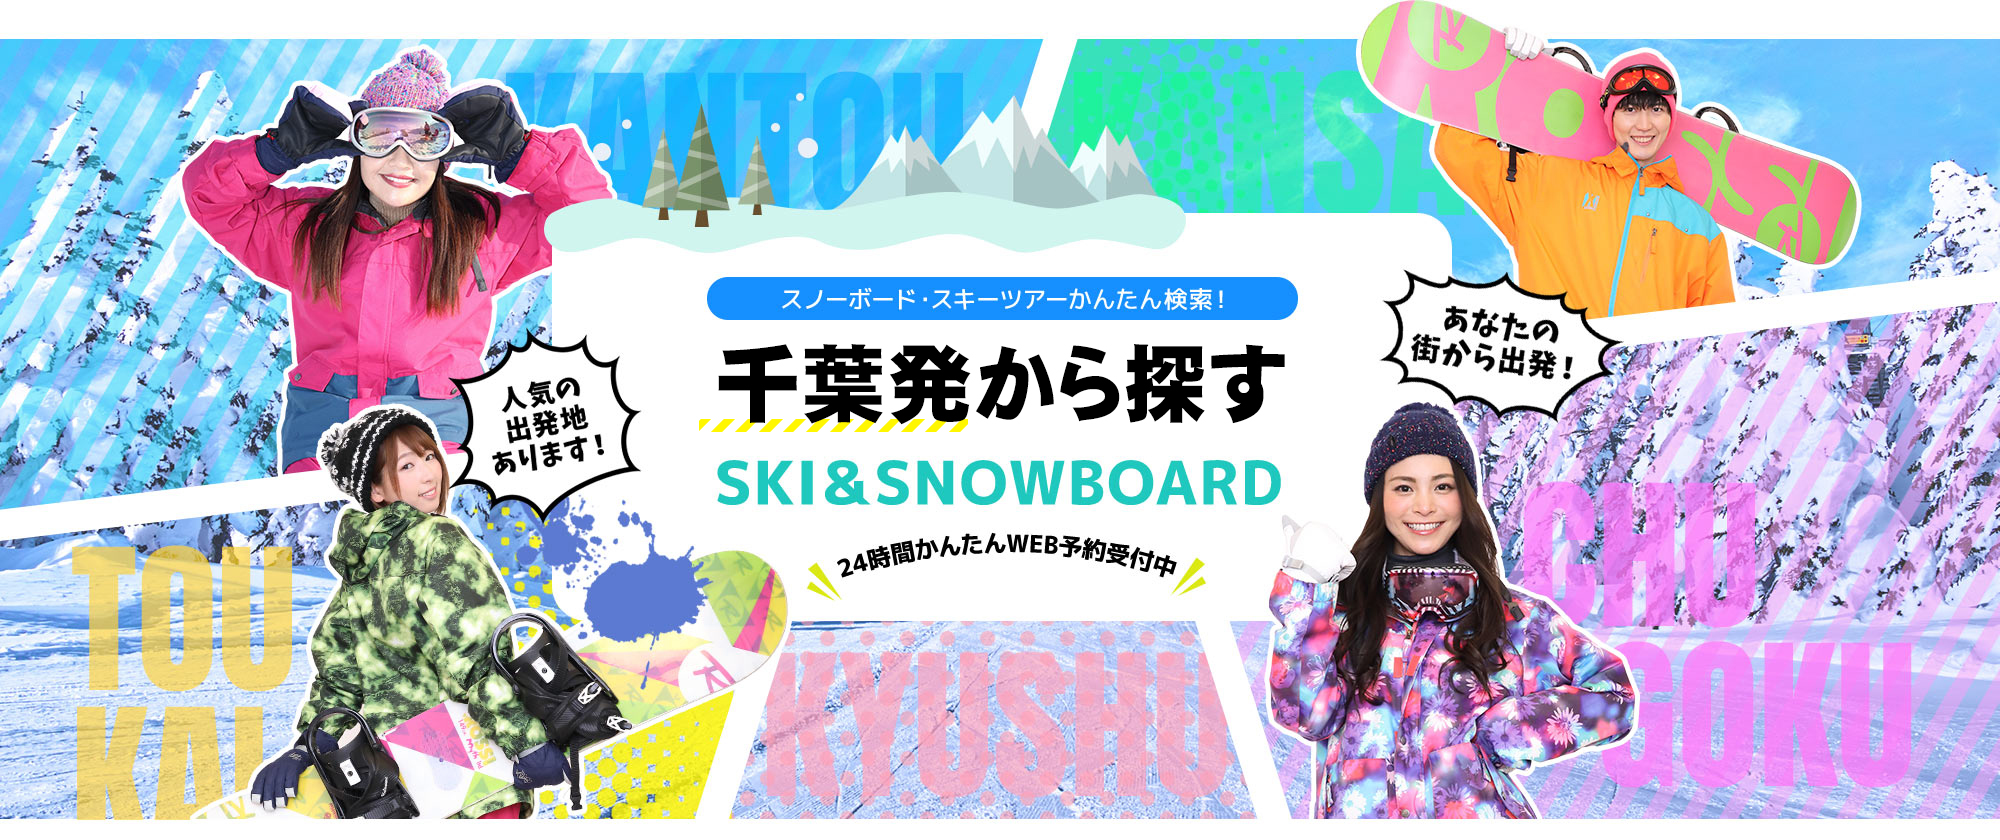 スノーボード・スキーツアーかんたん検索！ 千葉発から探す SKI&SNOWBOARD